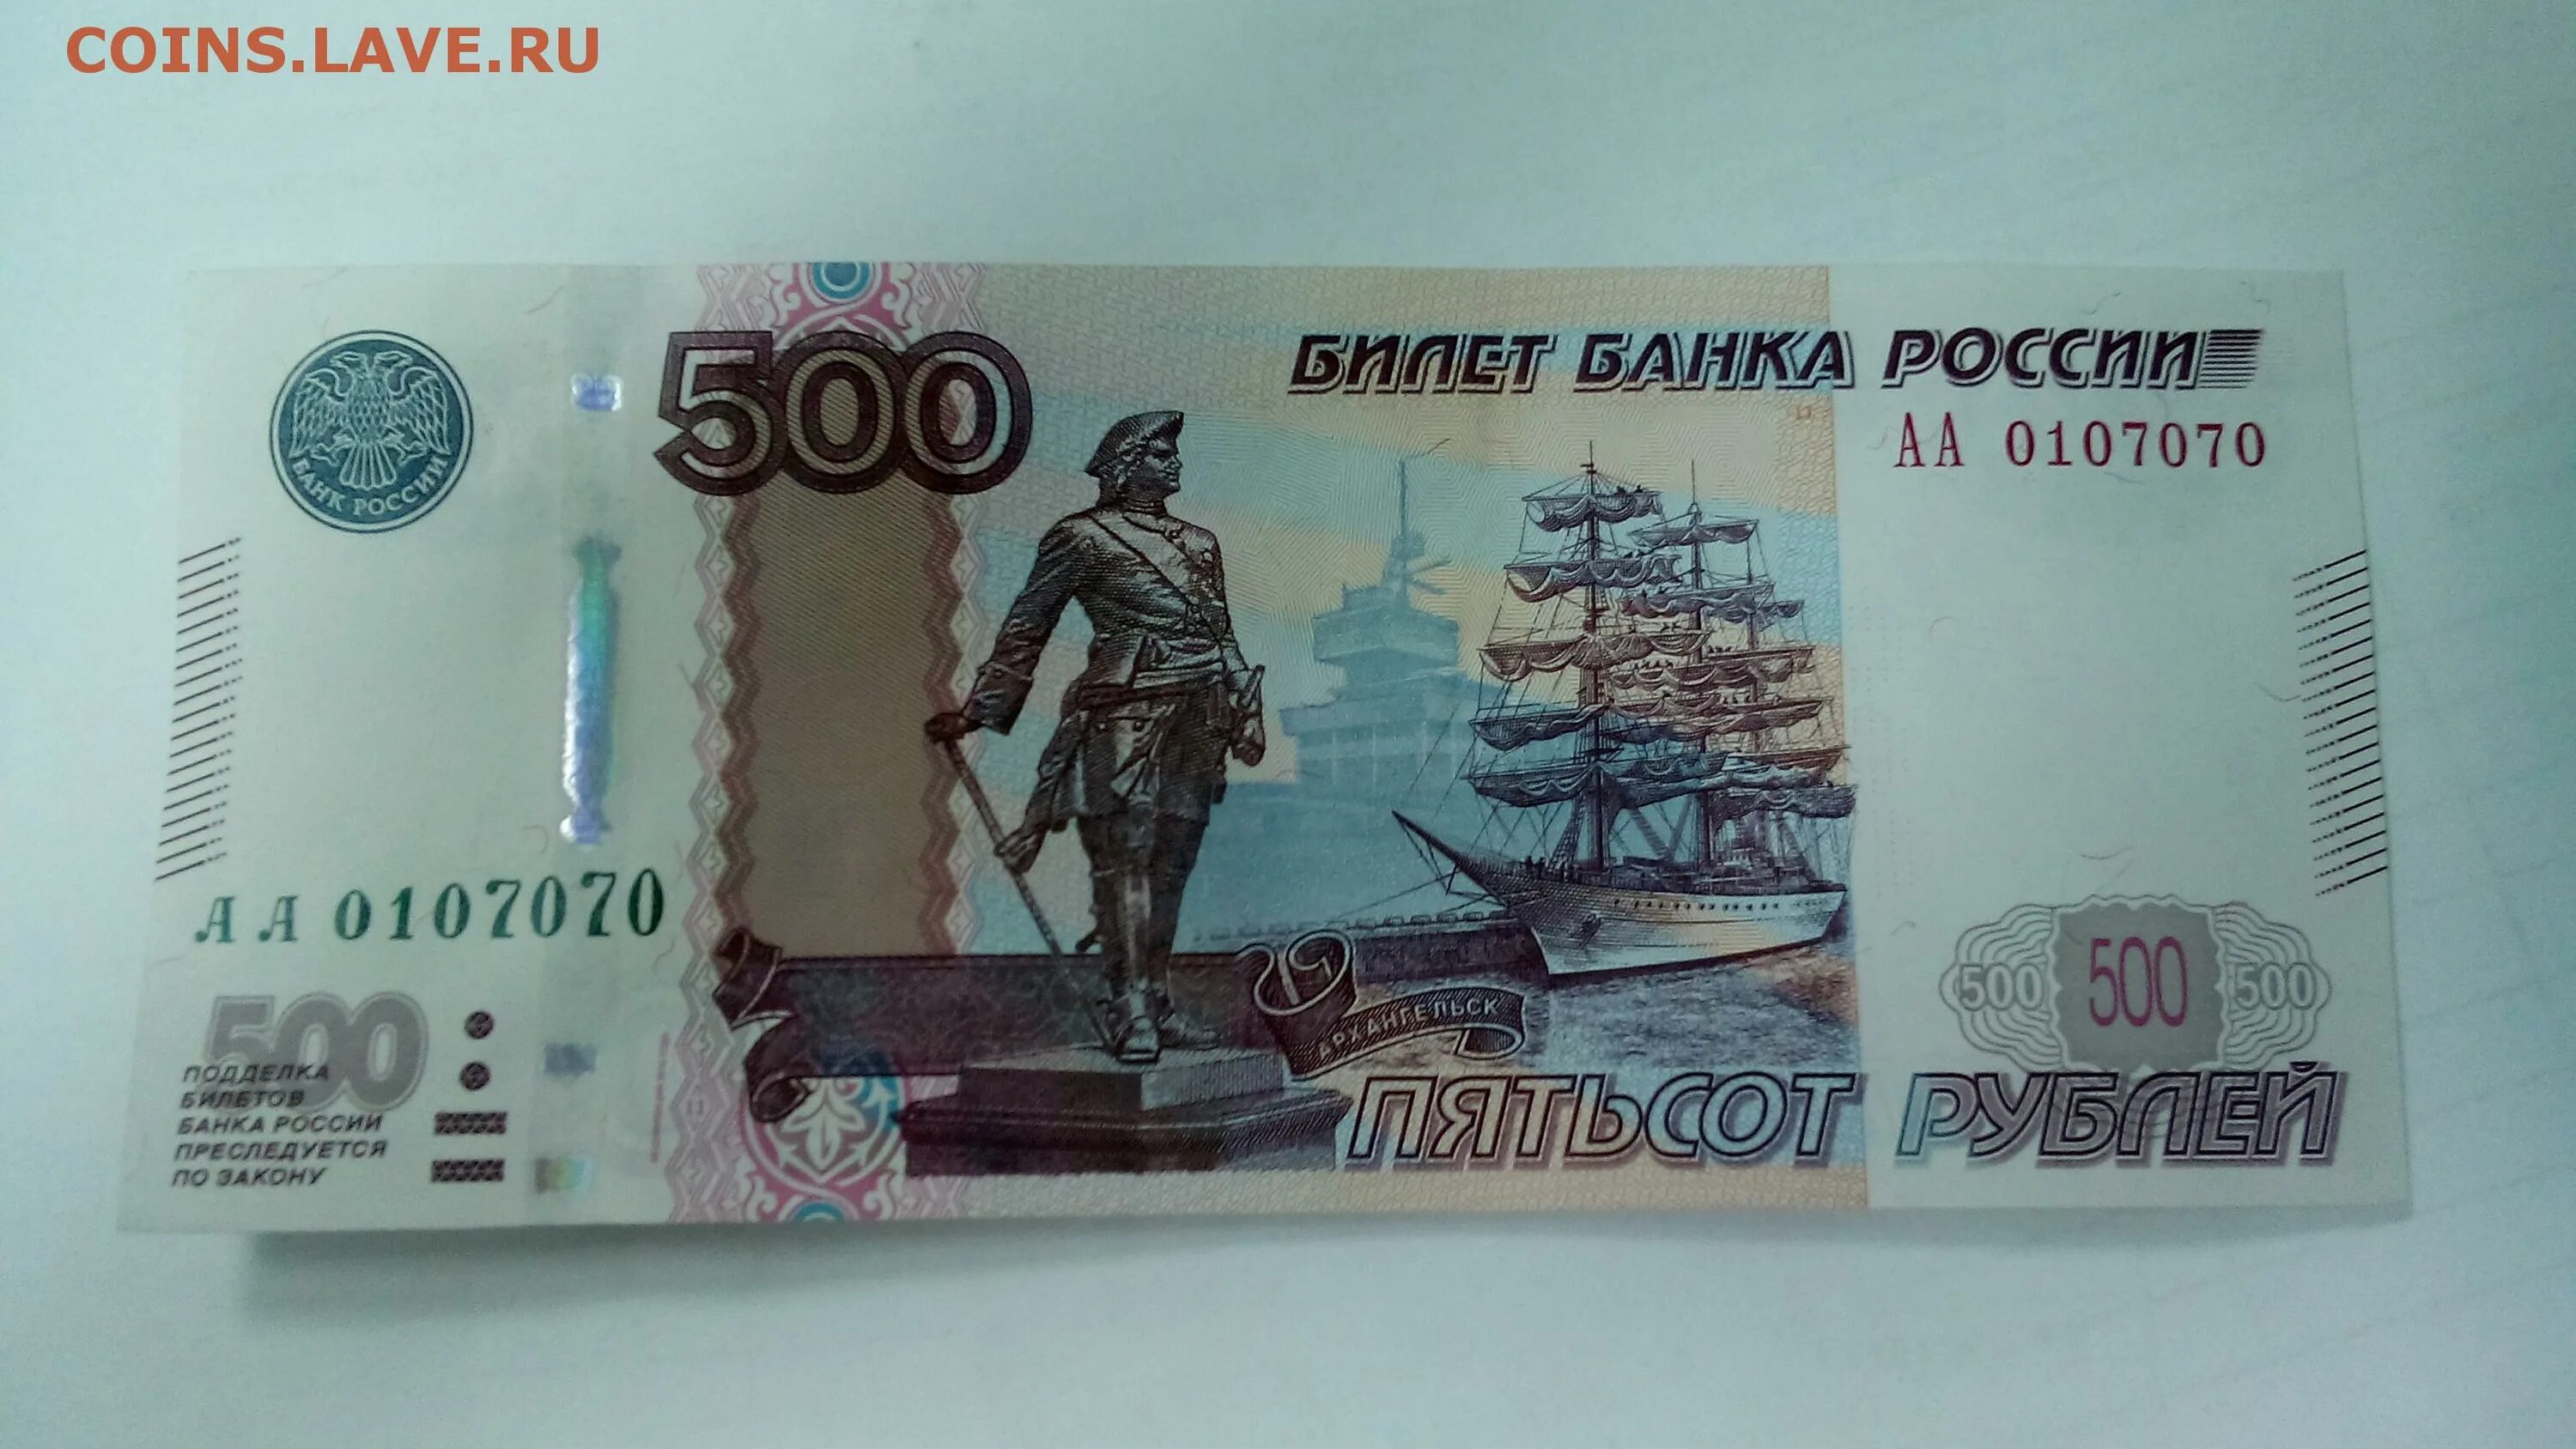 Долями 500 рублей. Купюра 500 рублей. Деньги 500 рублей. Банкнота 500 рублей. Купюра 500 рублей 2010.